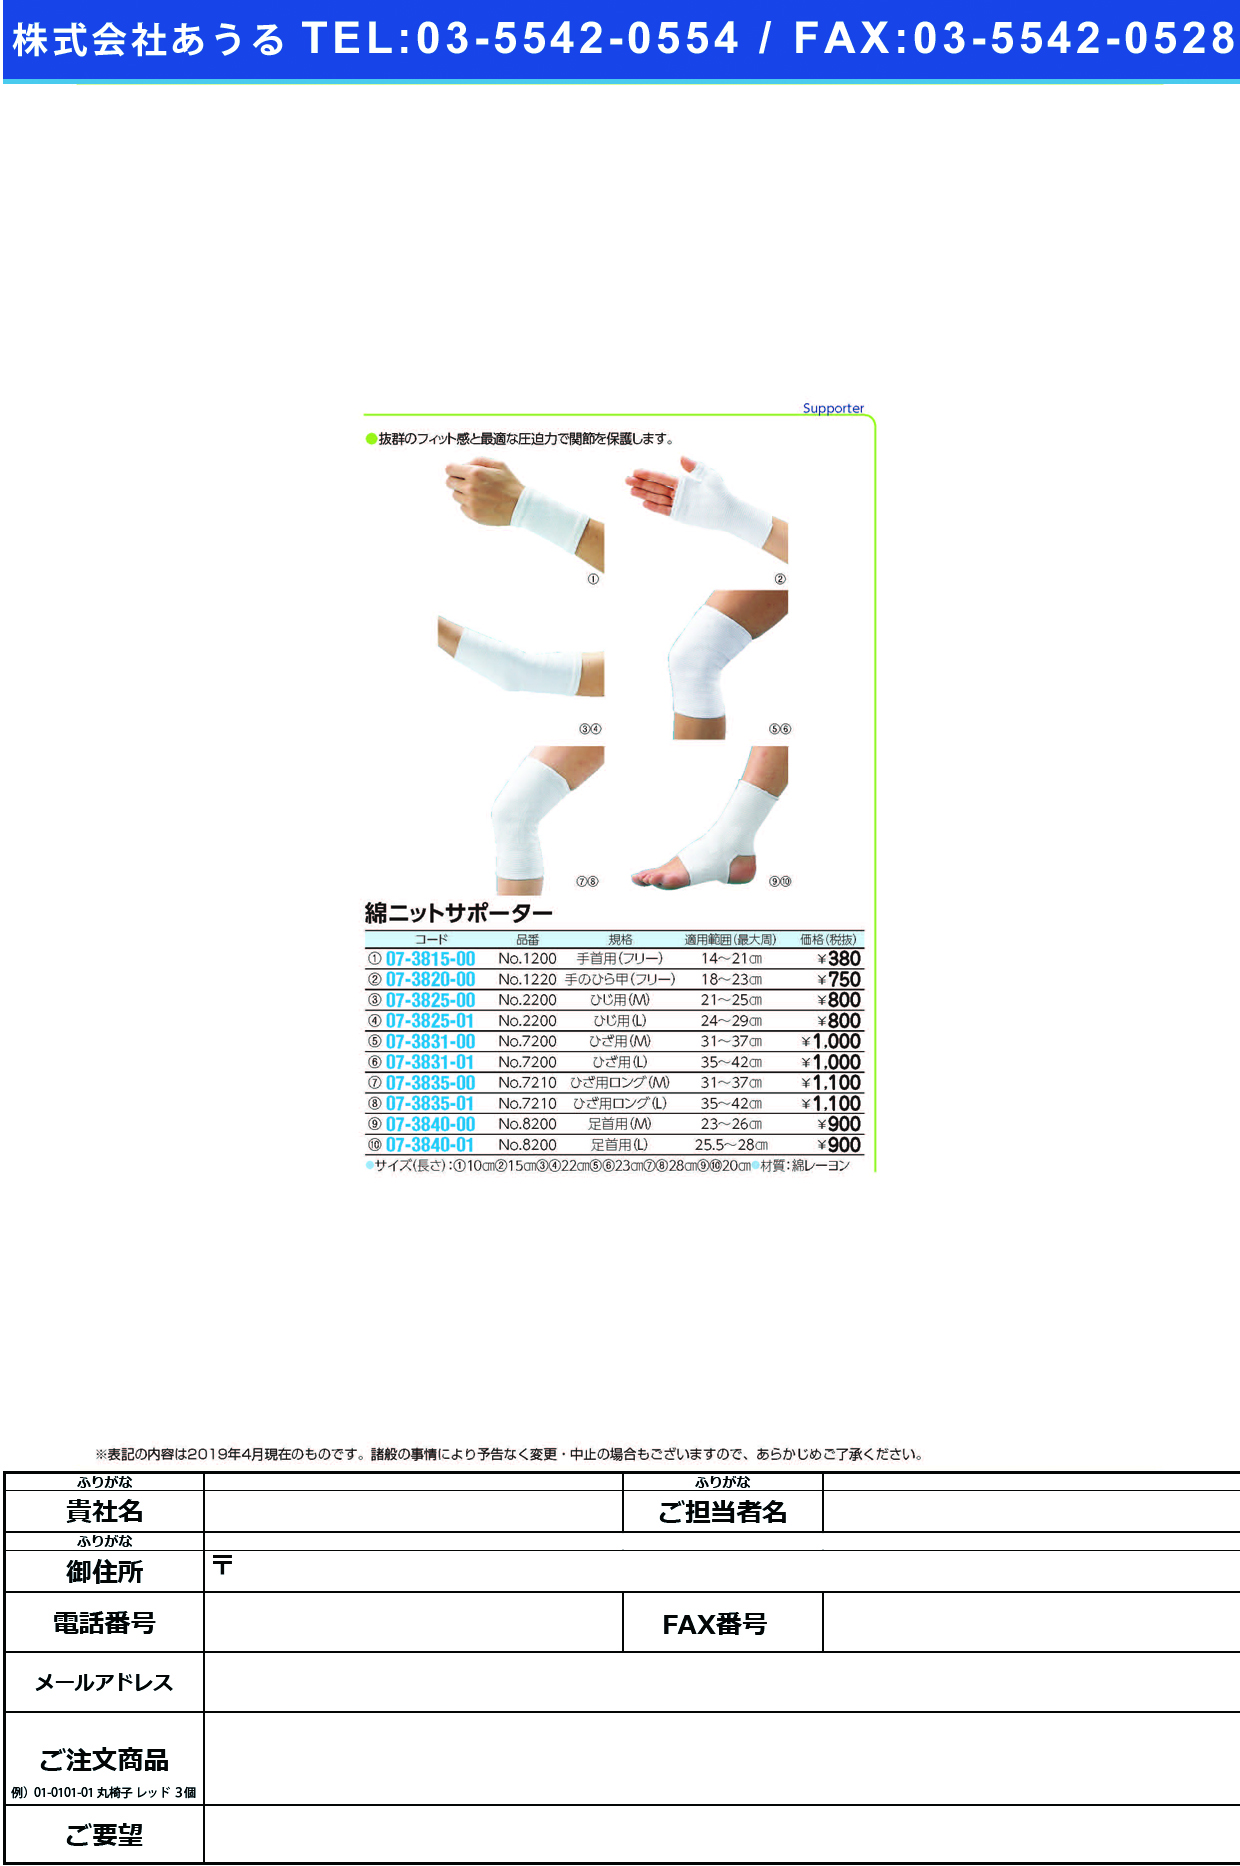 (07-3831-01)綿ニットサポーター（ひざ用） NO.7200(L) ﾒﾝﾆｯﾄｻﾎﾟｰﾀｰ(ﾋｻﾞﾖｳ)【1枚単位】【2019年カタログ商品】